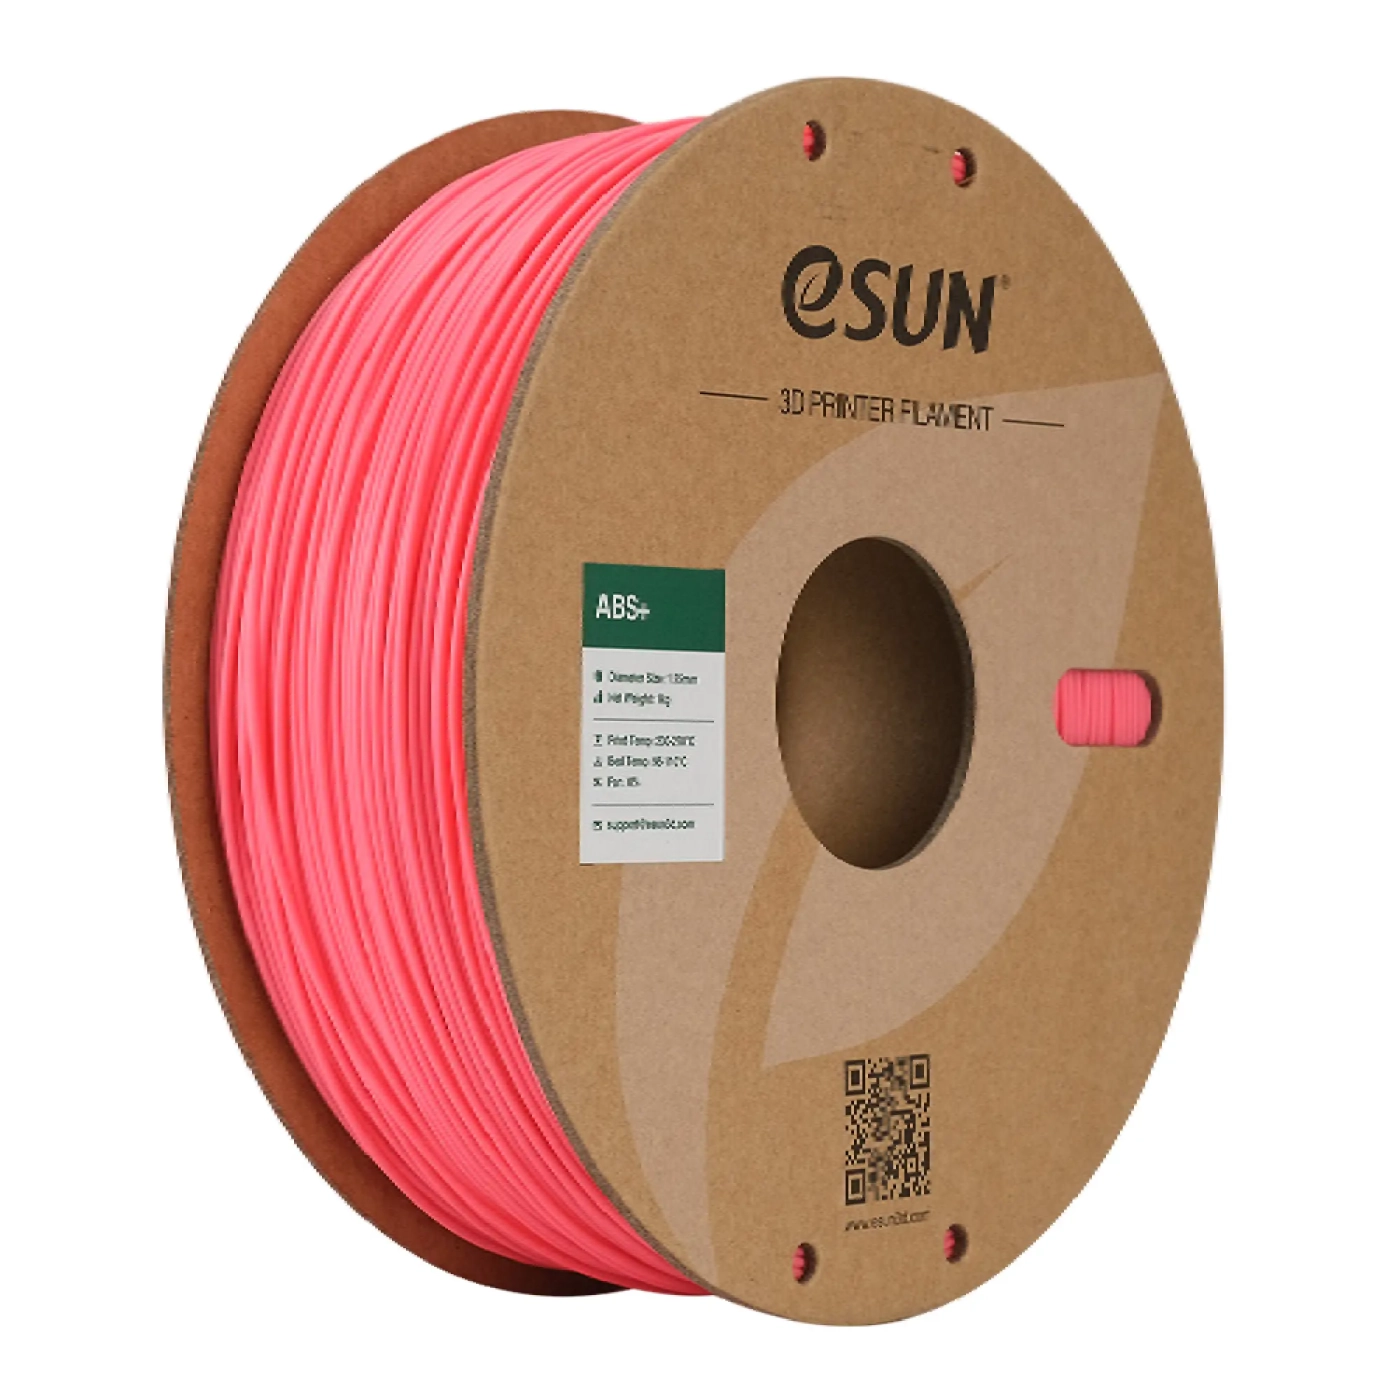 Купить ABS Plus Filament (пластик) для 3D принтера Esun 1кг, 1.75мм, розовый (ABS+175P1) - фото 1